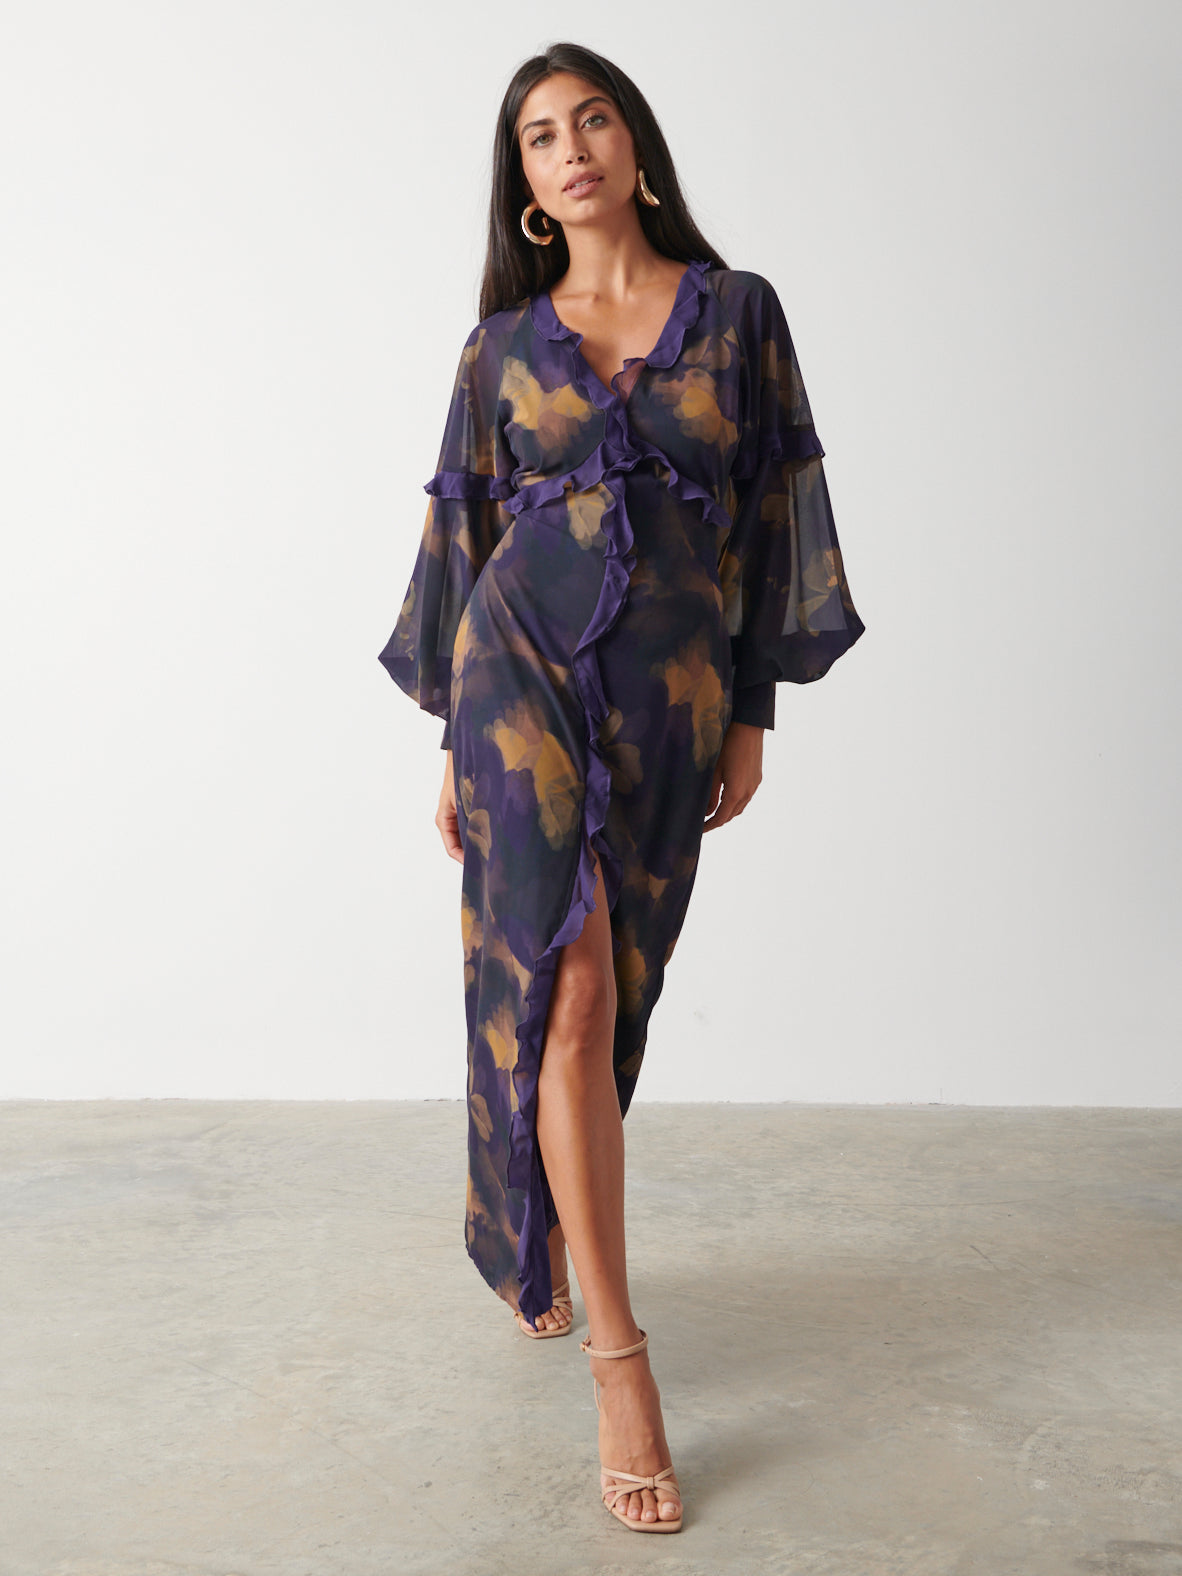 Francesca Frill Maxi Dress - Dark Amethyst & Saffron Floral, 10